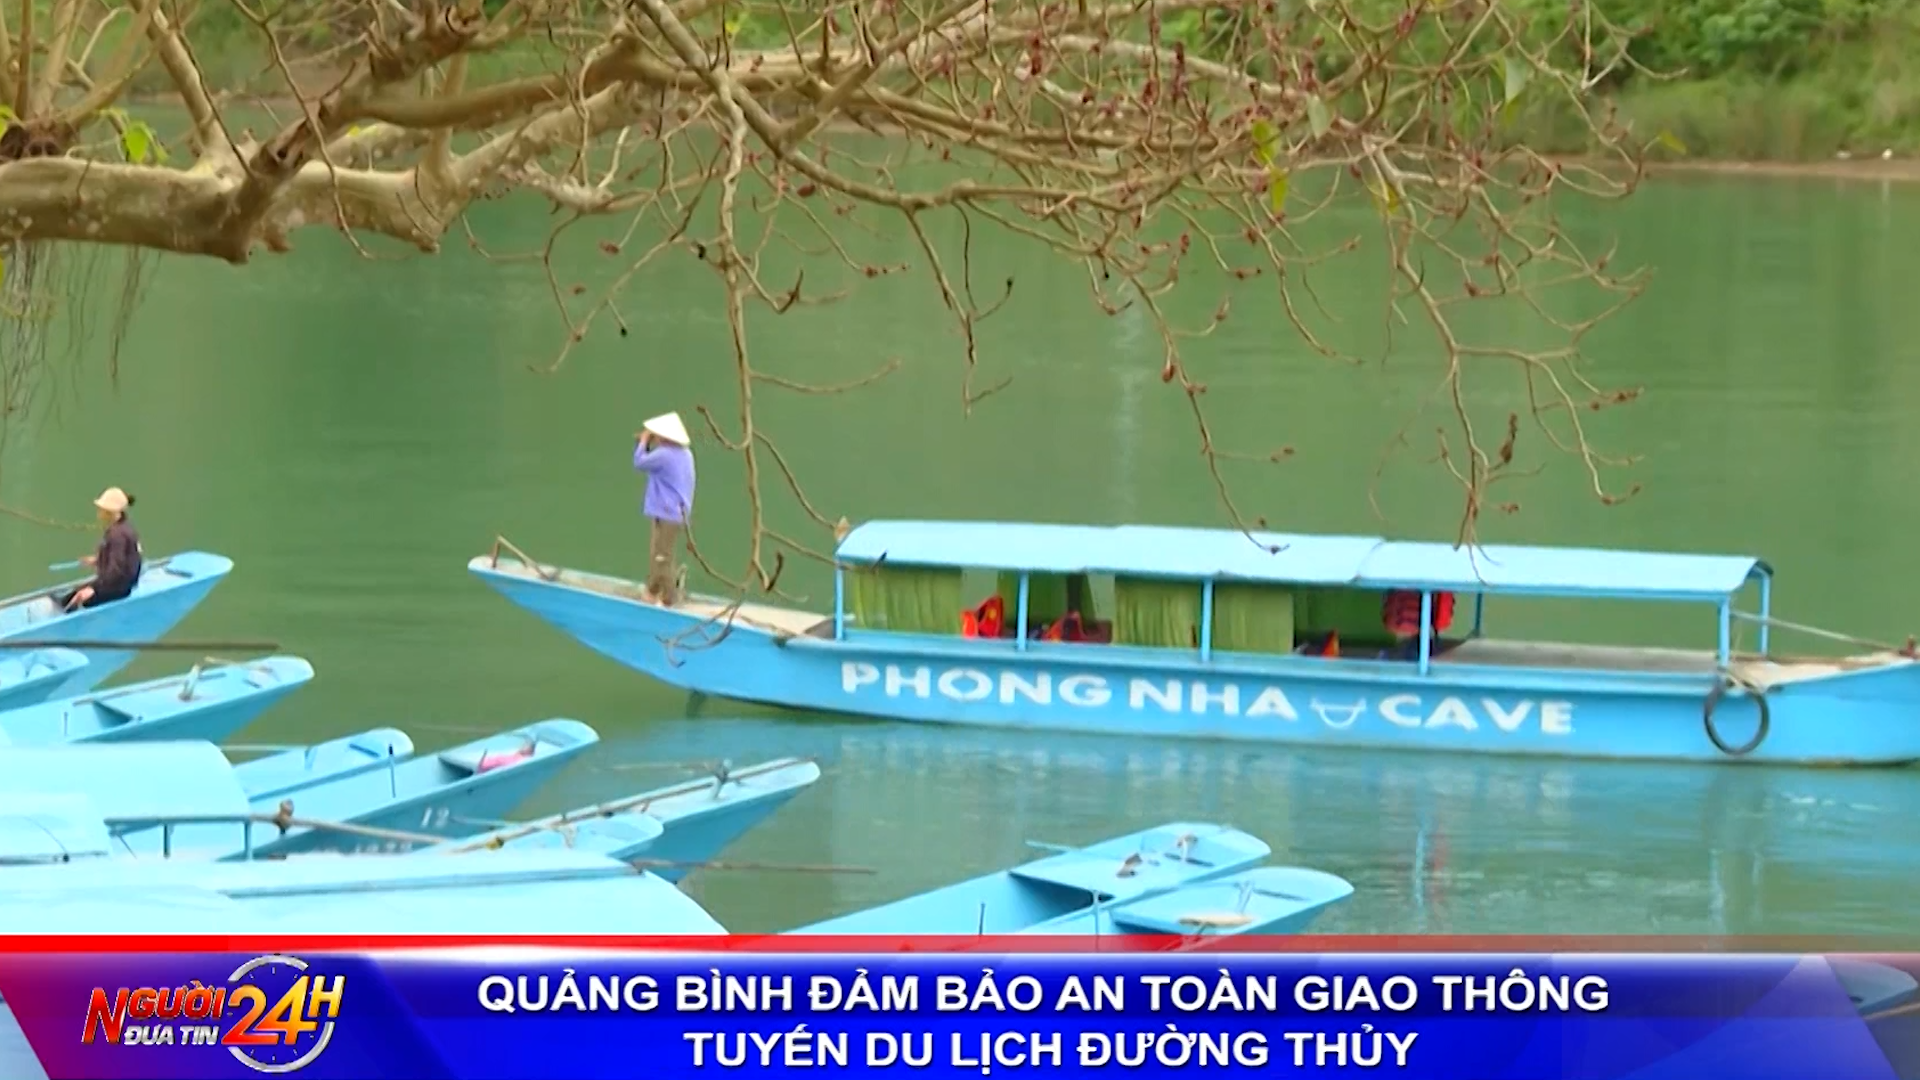 Quảng Bình đảm bảo an toàn giao thông tuyến du lịch đường thủy